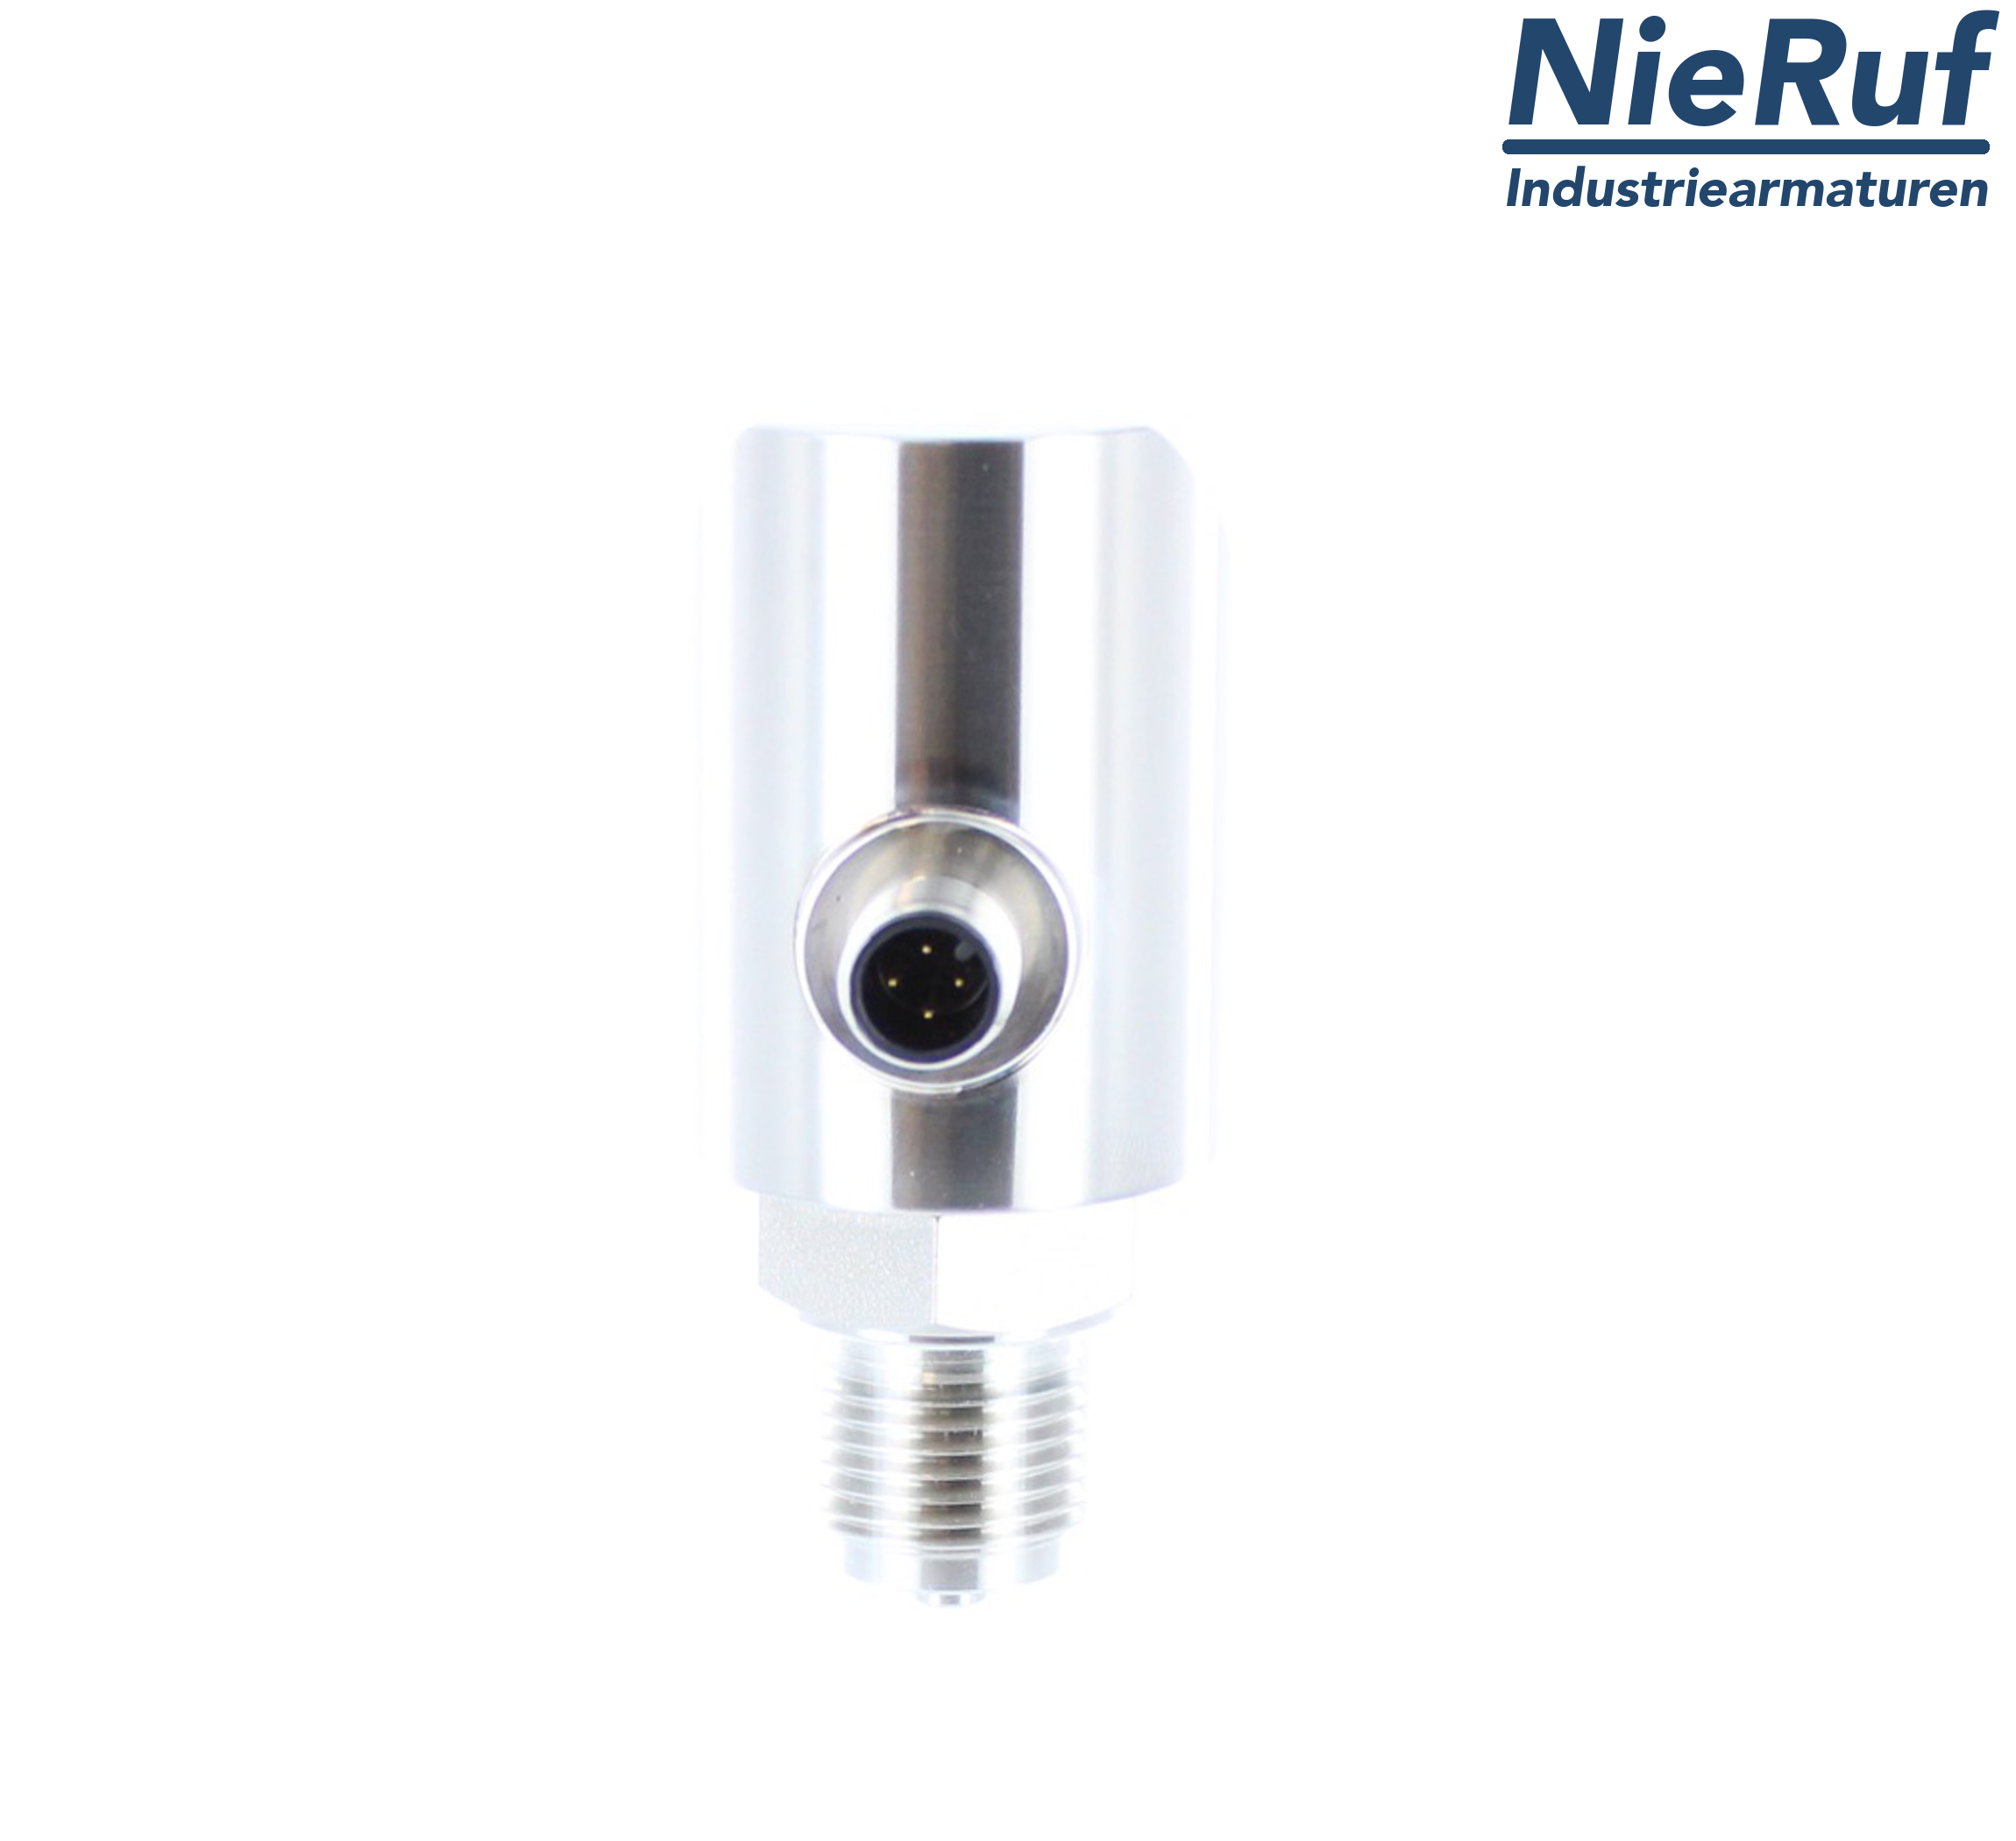 digital pressure sensor G 1/2" B 5-wire: 2xPNP, 1x4 - 20mA FPM 0,0 - 100,0 bar